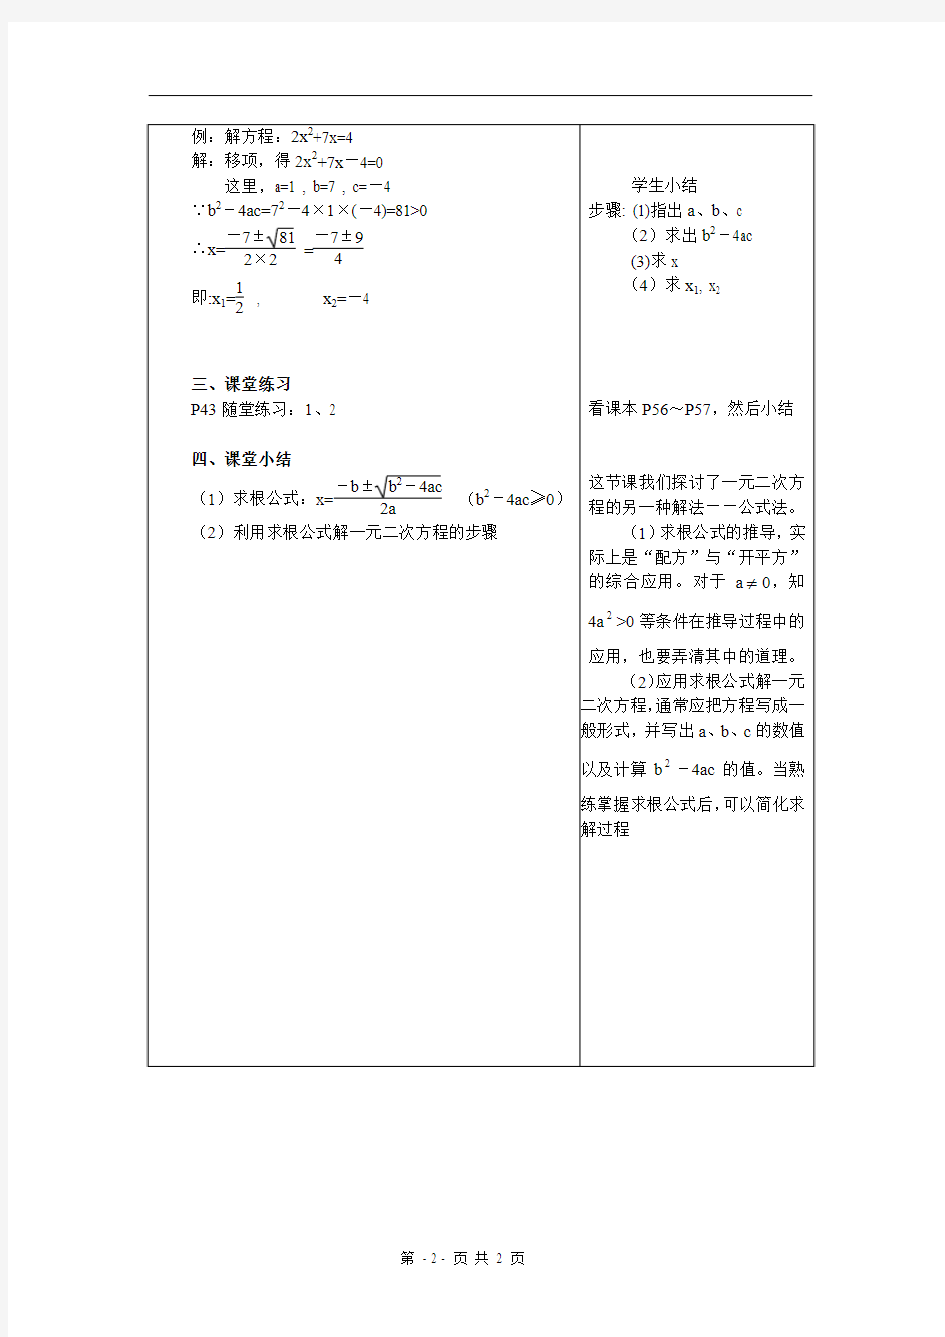 2.3 用公式法求解一元二次方程(1)